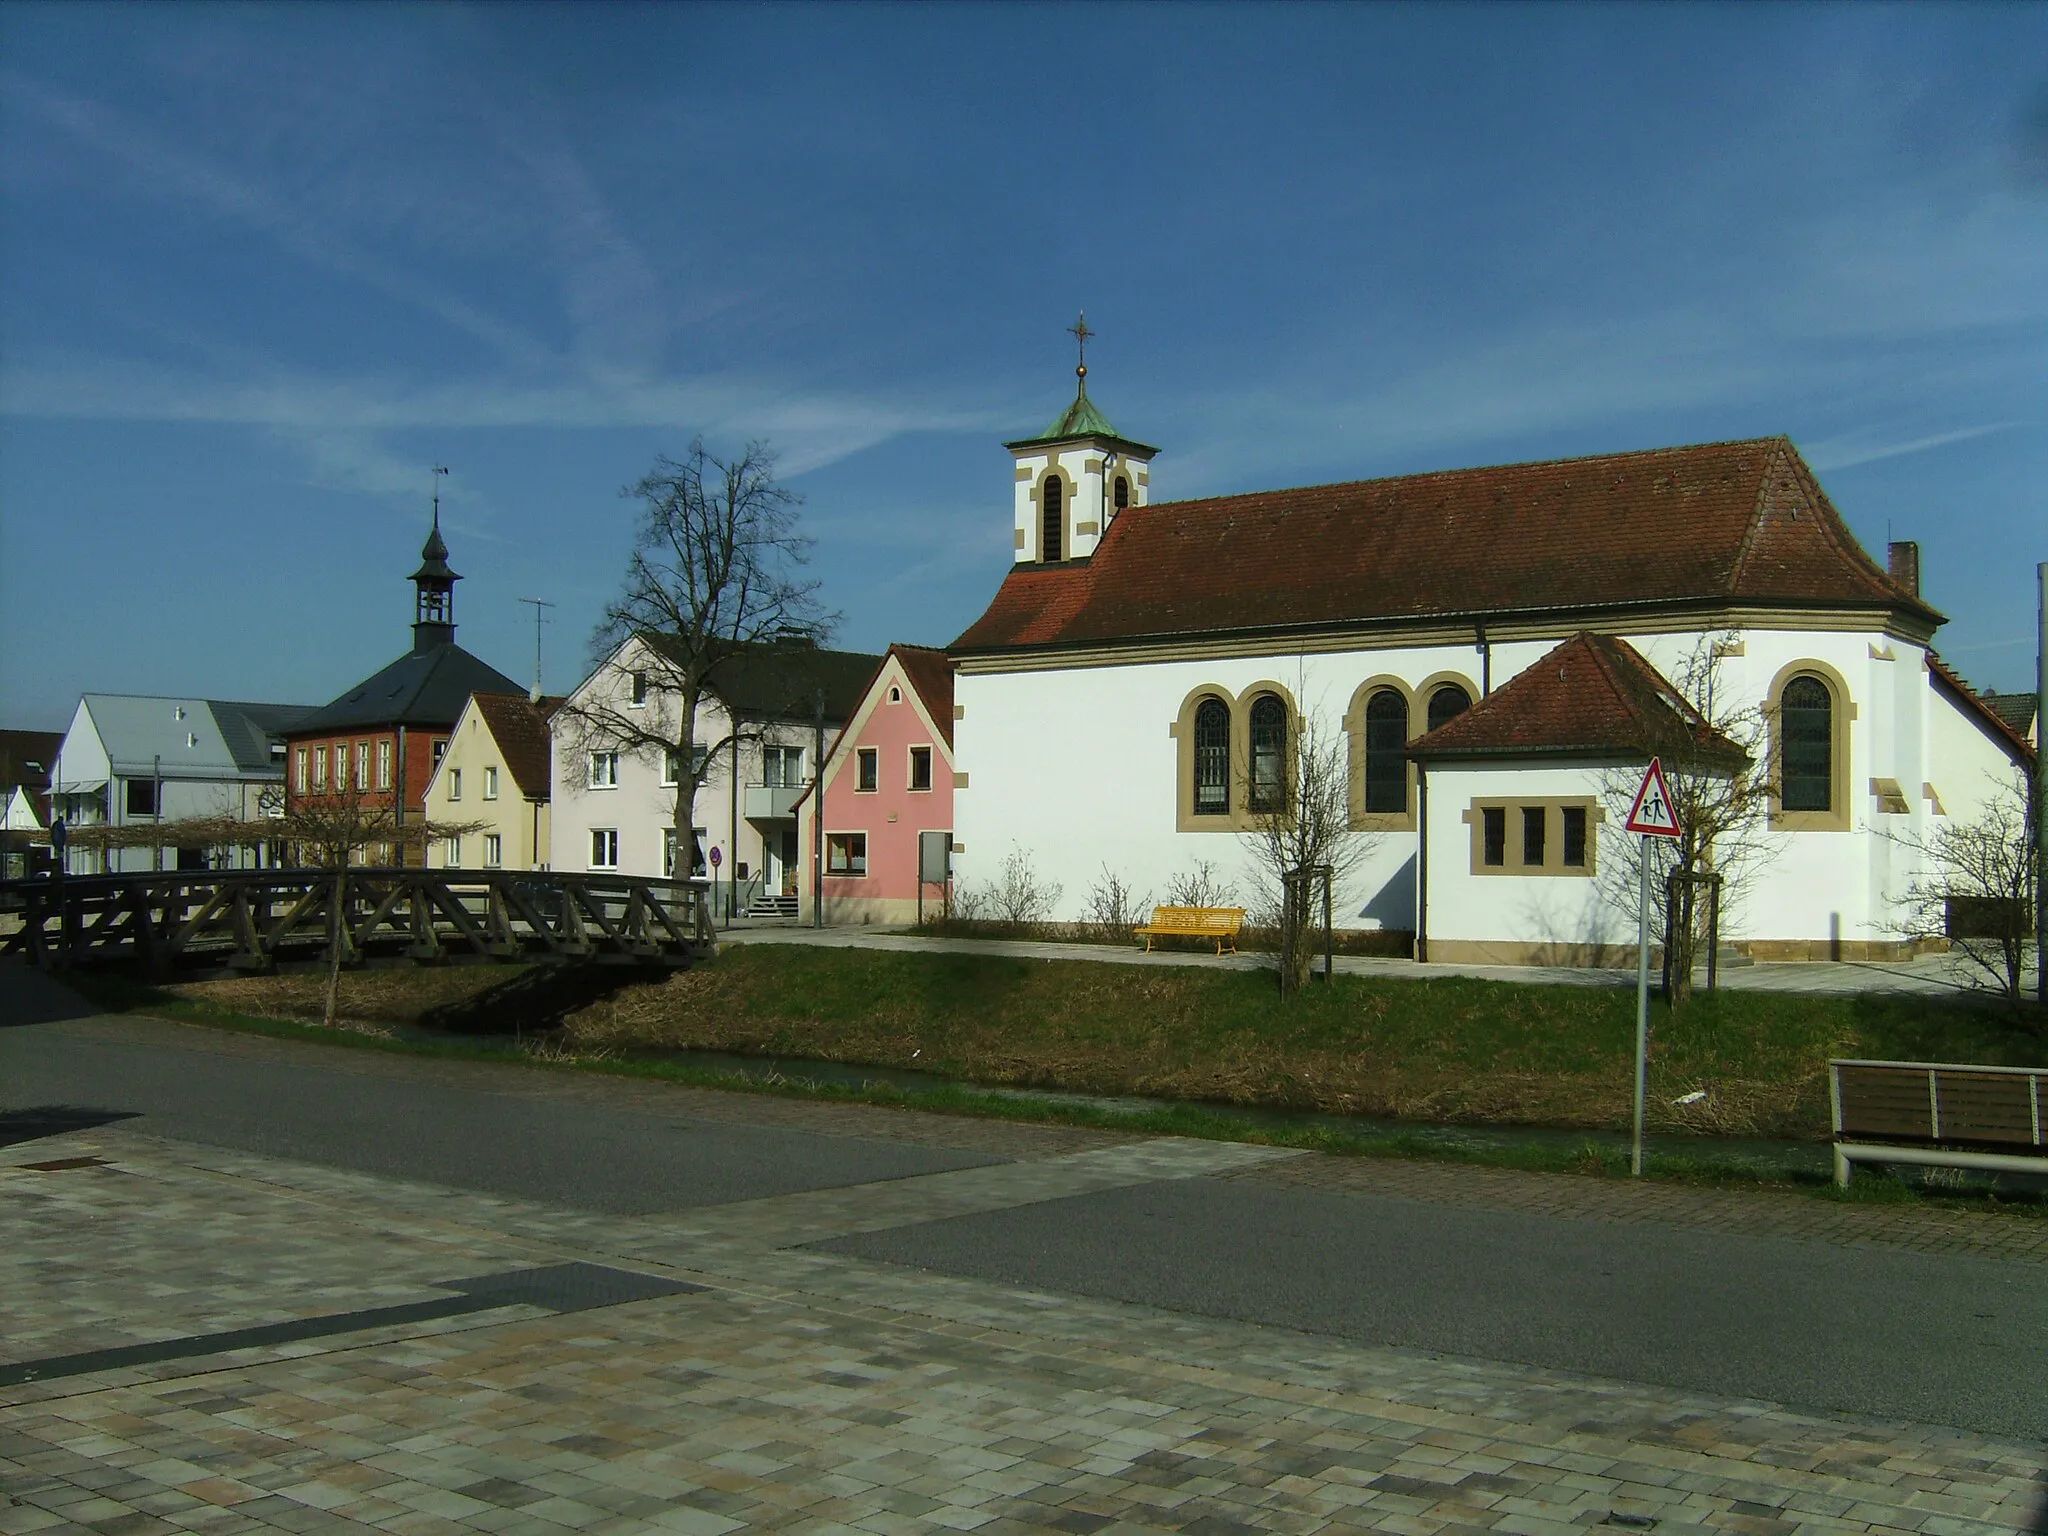 Bild von Gundelsheim